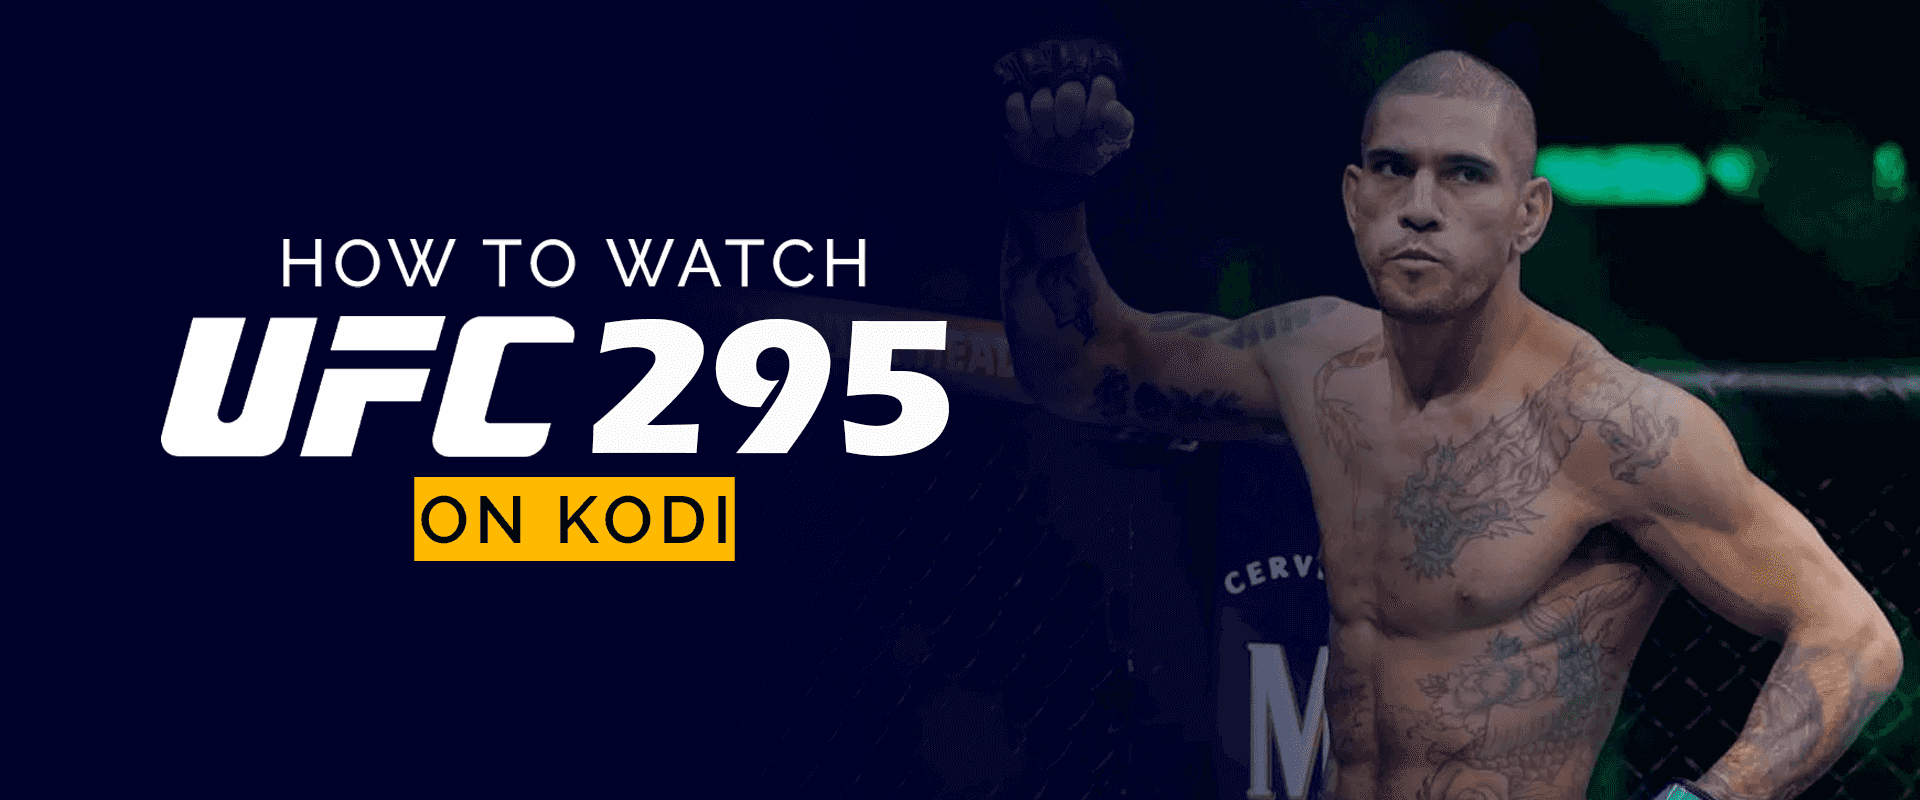 How to Watch UFC 295 on Kodi